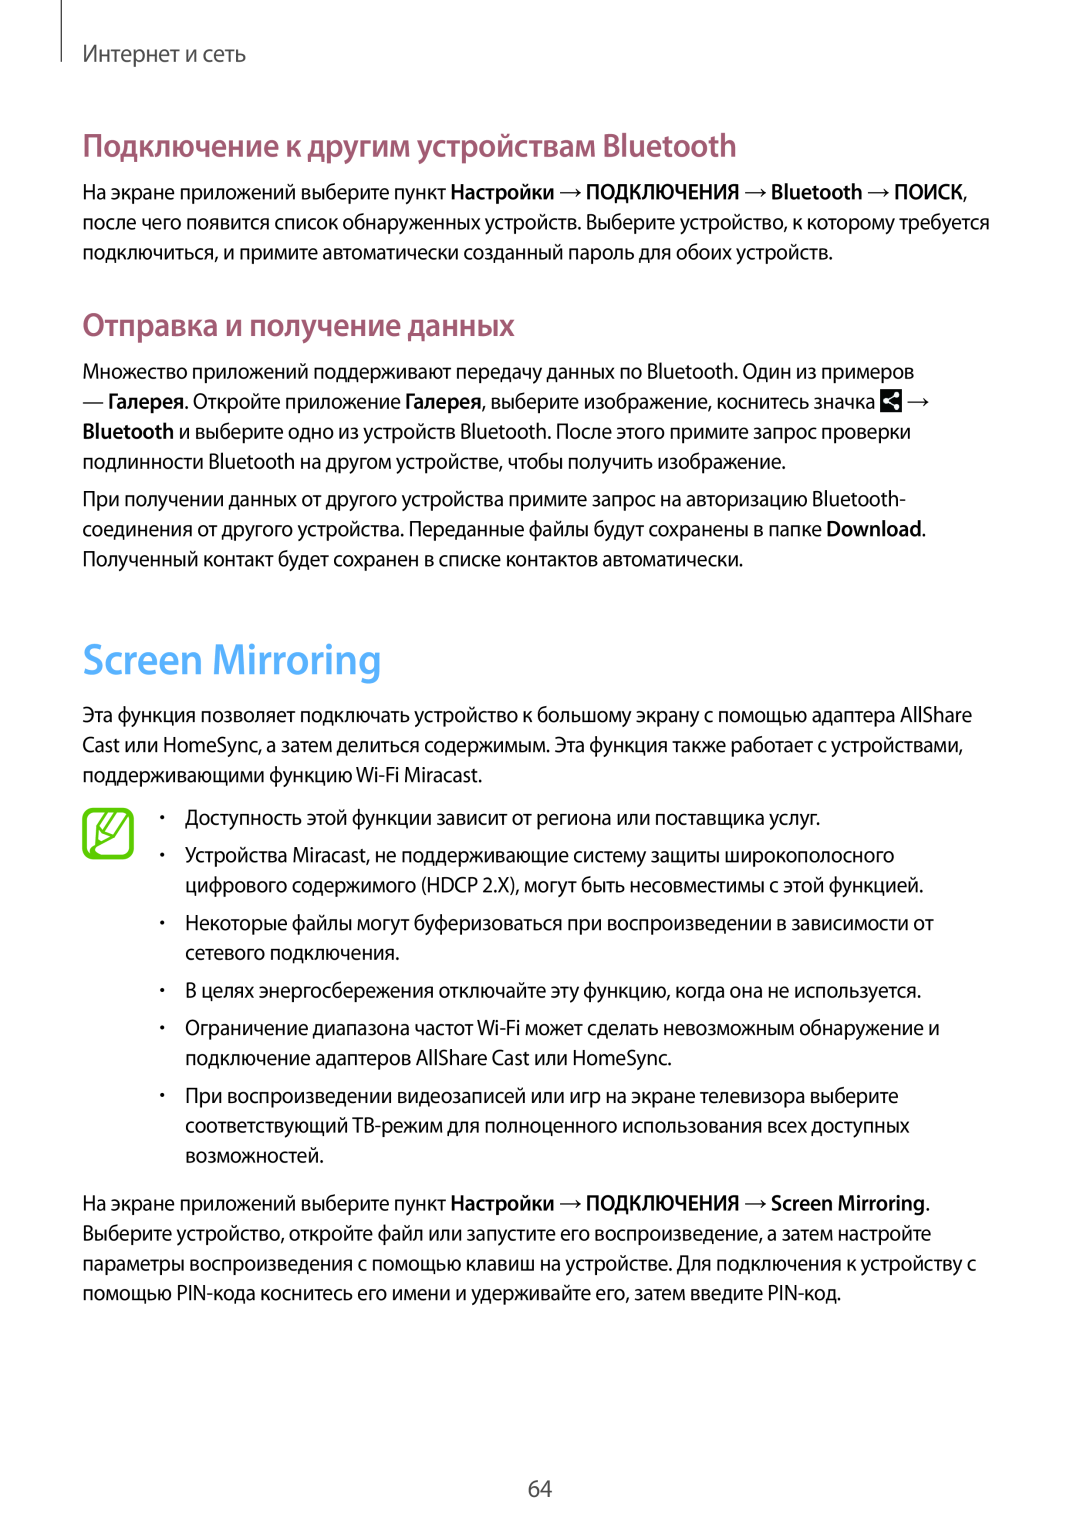 Samsung SM-P9000ZKASEB manual Screen Mirroring, Подключение к другим устройствам Bluetooth, Отправка и получение данных 